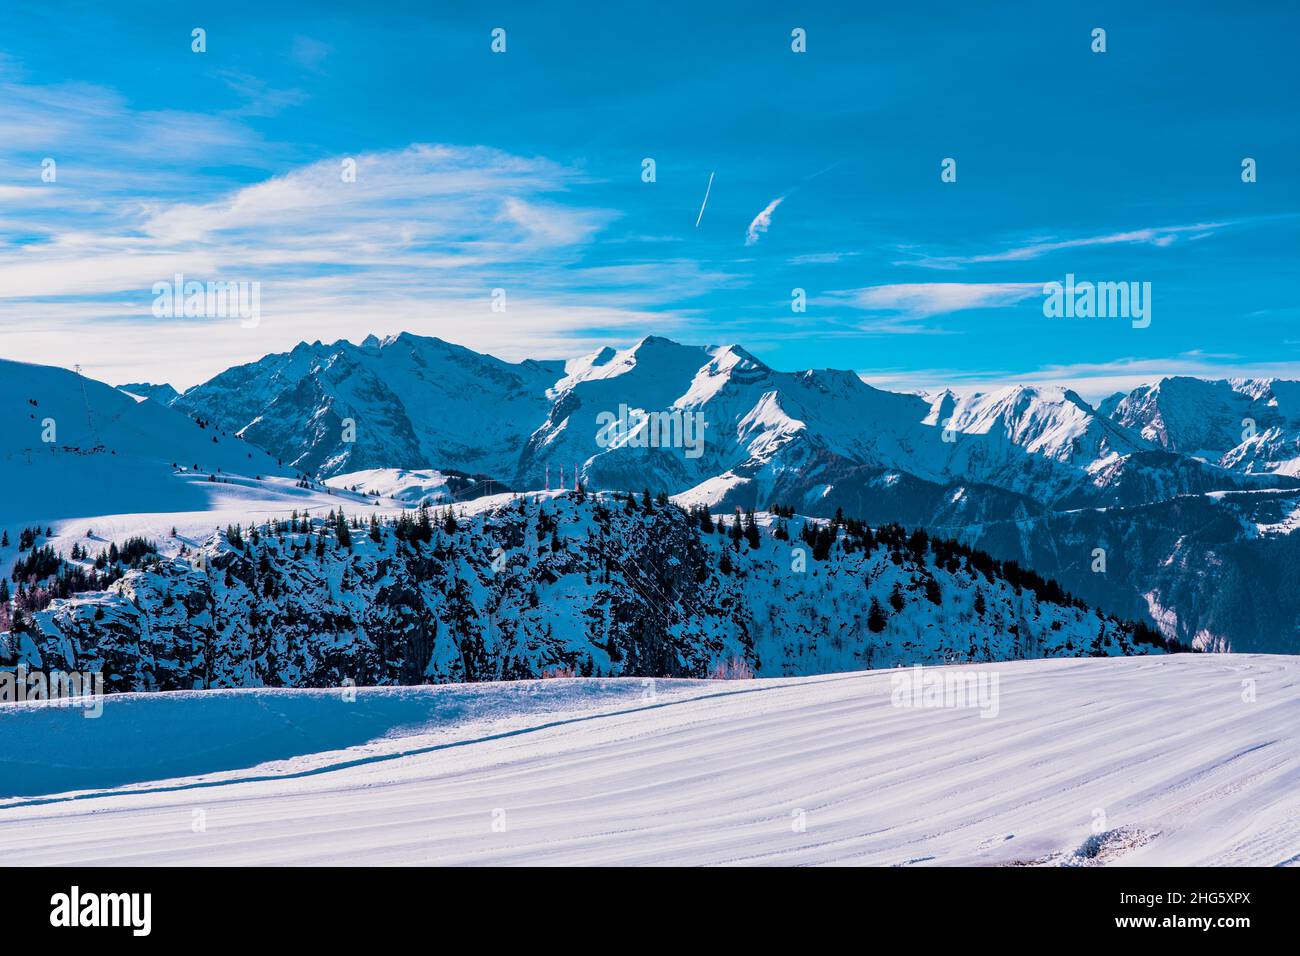 Alpe d'Huez, France - 30.12.2021: Station d'hiver de montagne alpine avec vue panoramique sur la petite piste d'aéroport.Photo de haute qualité Banque D'Images